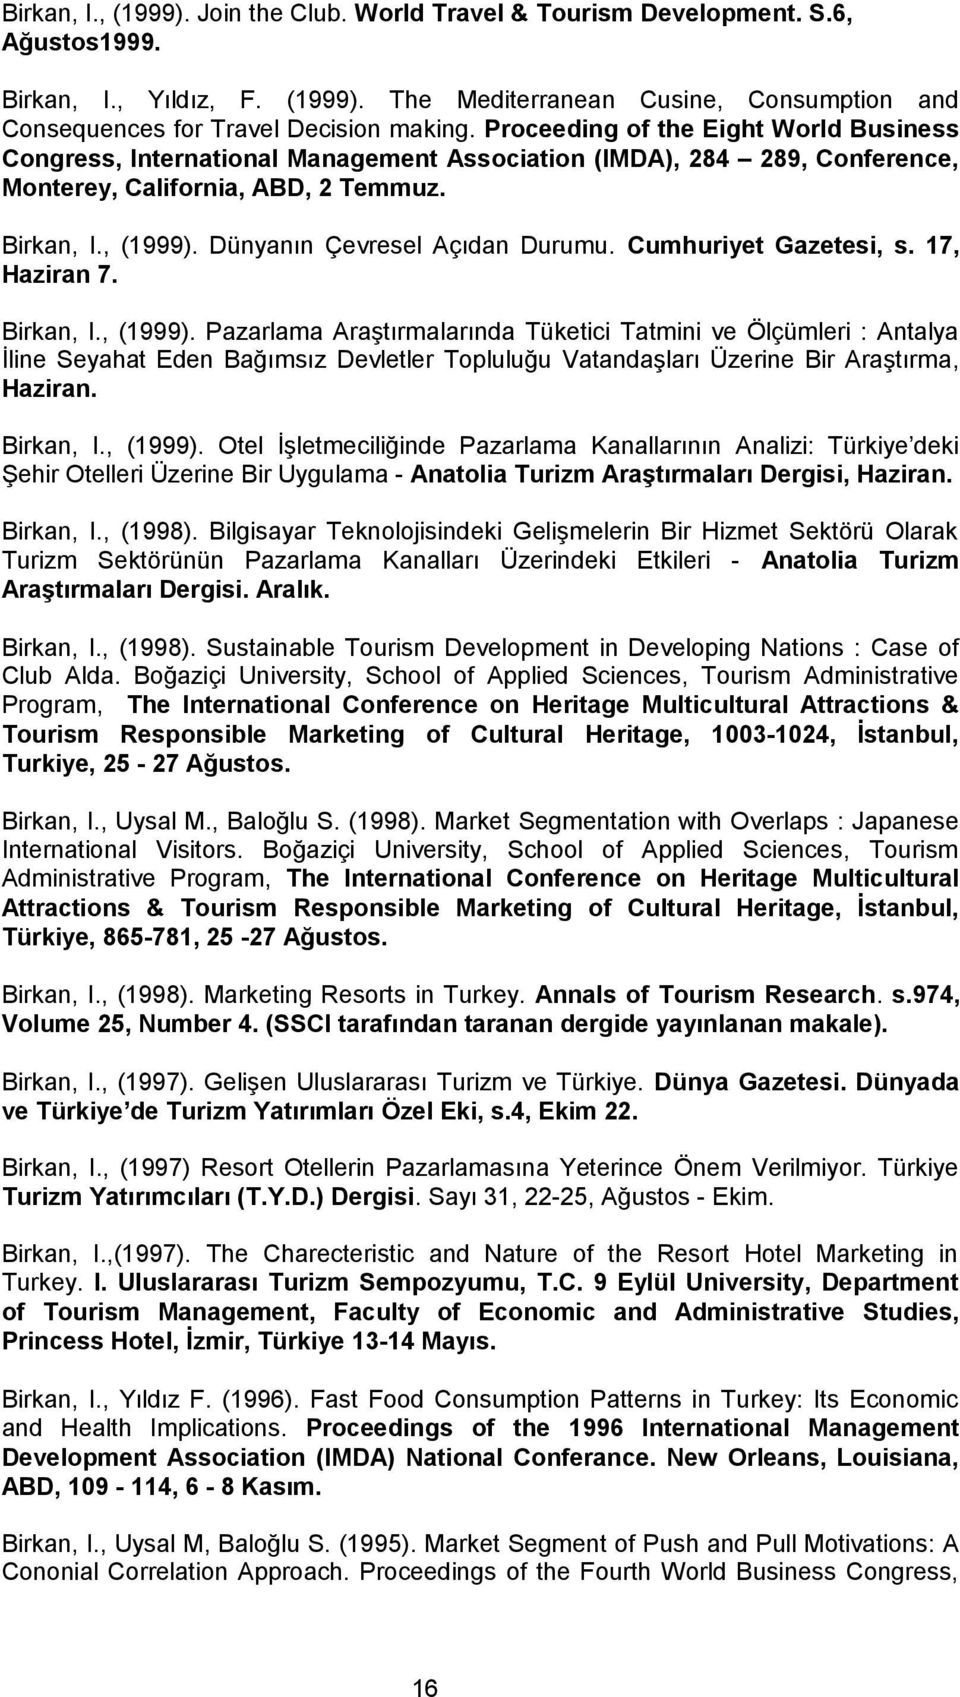 Dünyanın Çevresel Açıdan Durumu. Cumhuriyet Gazetesi, s. 17, Haziran 7. Birkan, I., (1999).